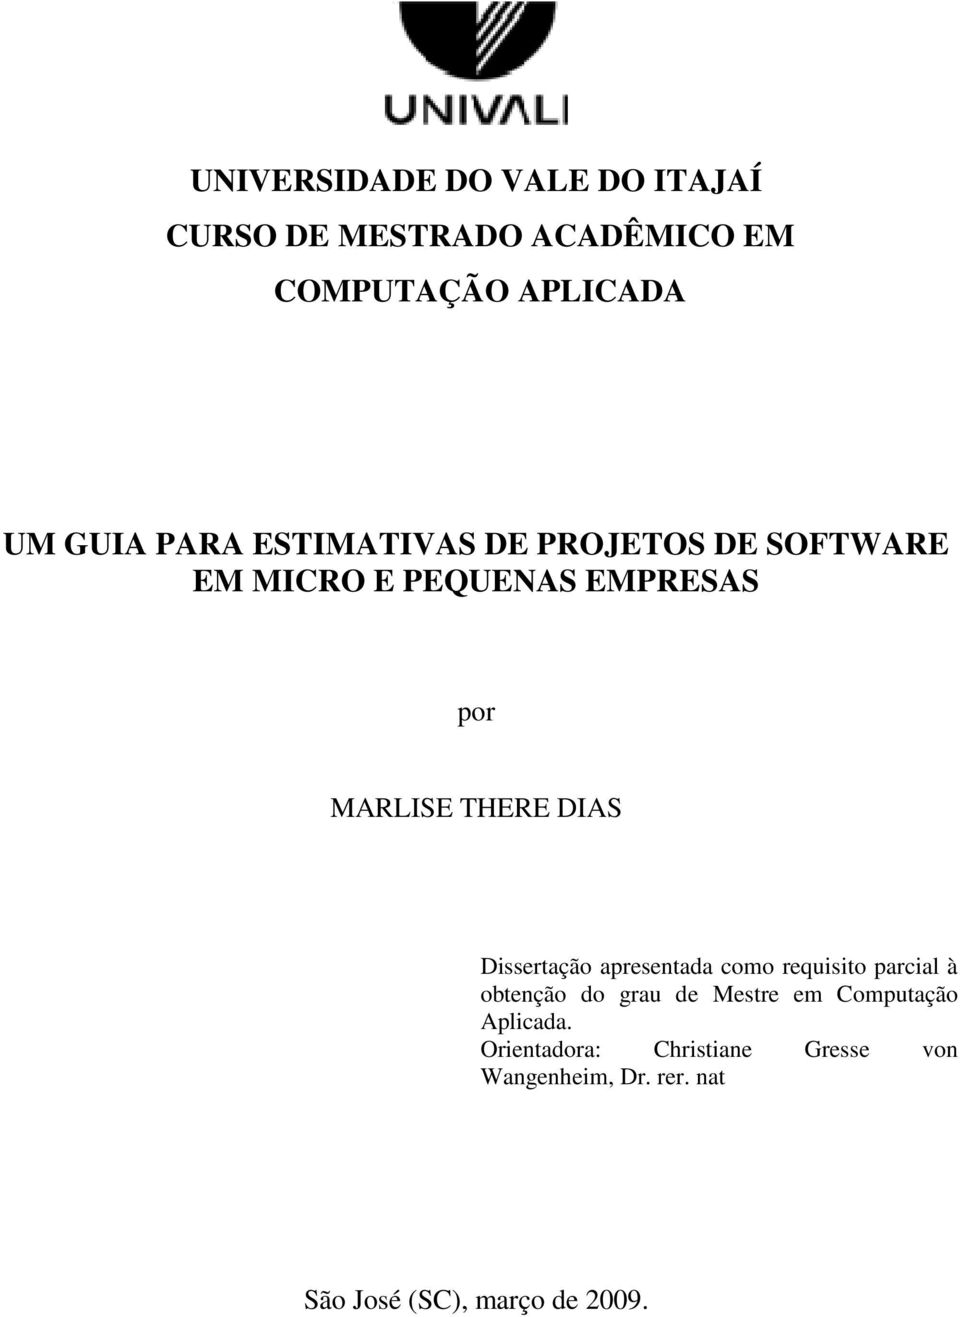 Dissertação apresentada como requisito parcial à obtenção do grau de Mestre em Computação